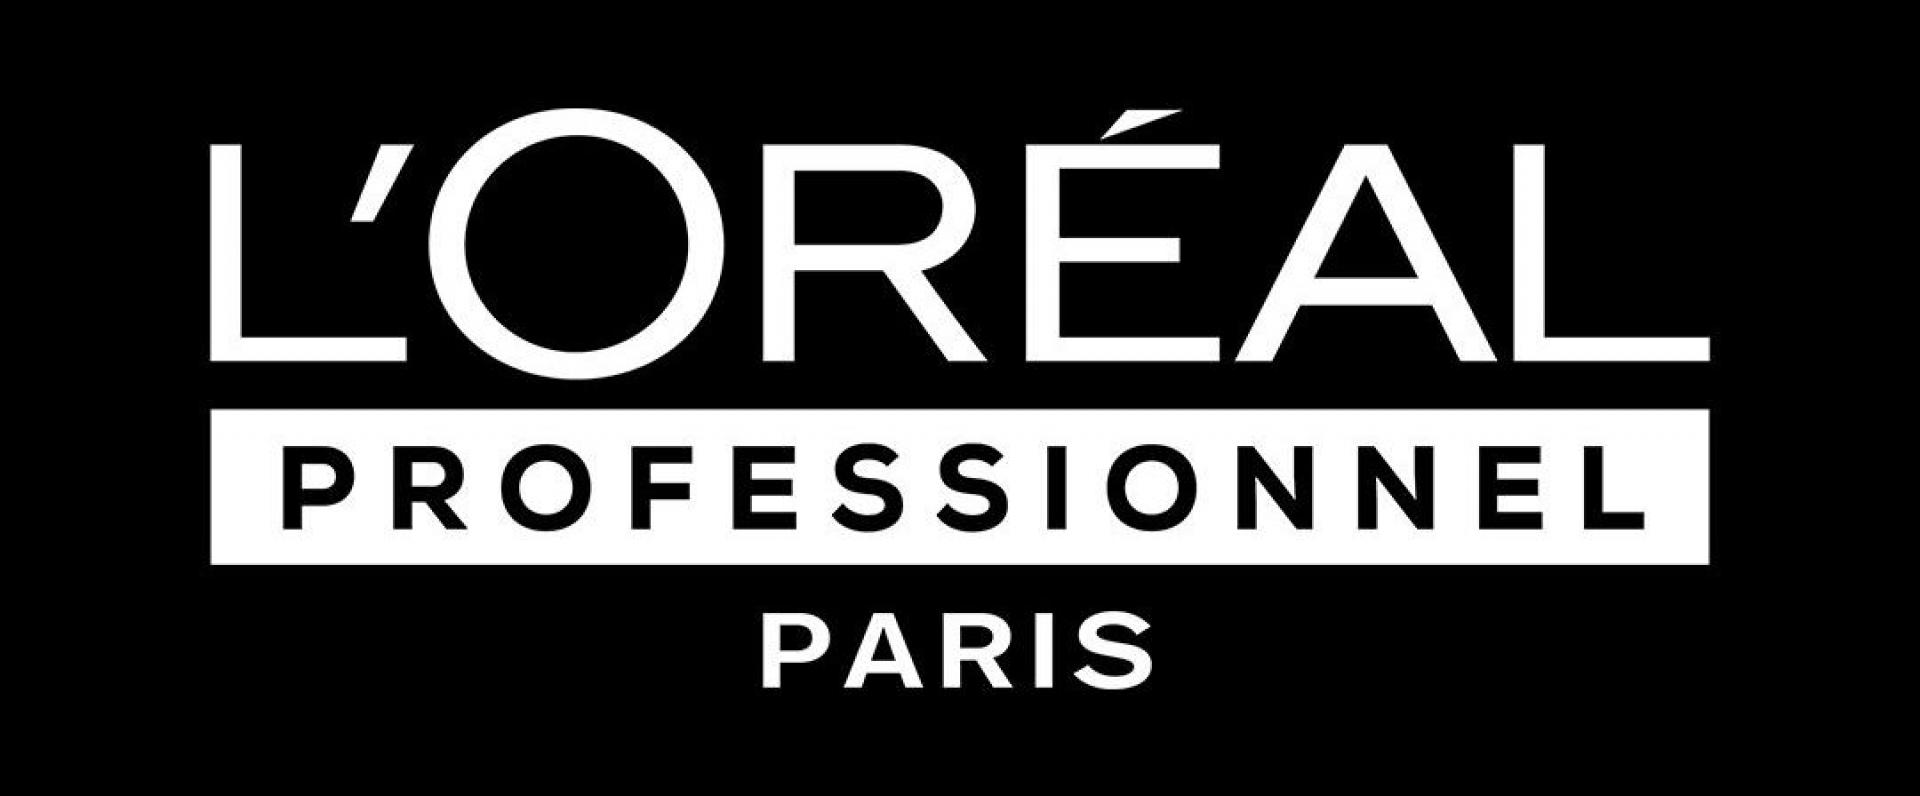 LOreal Professionnel Paris rozszerza współpracę z Big Picture PR